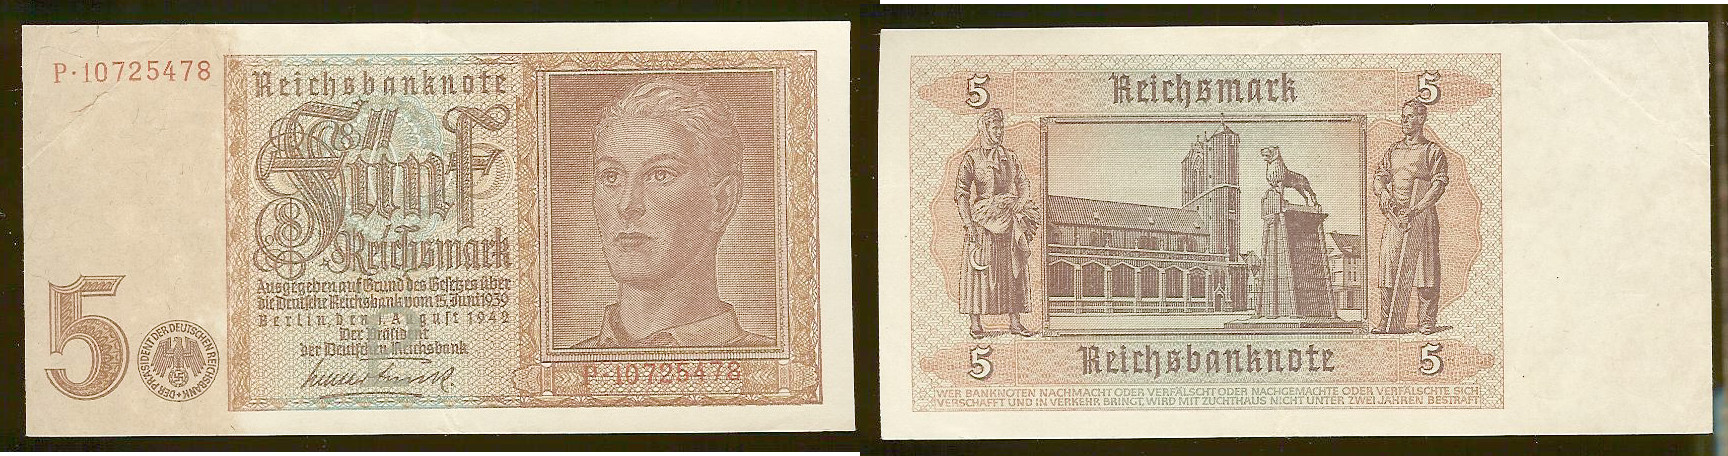 5 Reichsmark ALLEMAGNE 1942 TTB+